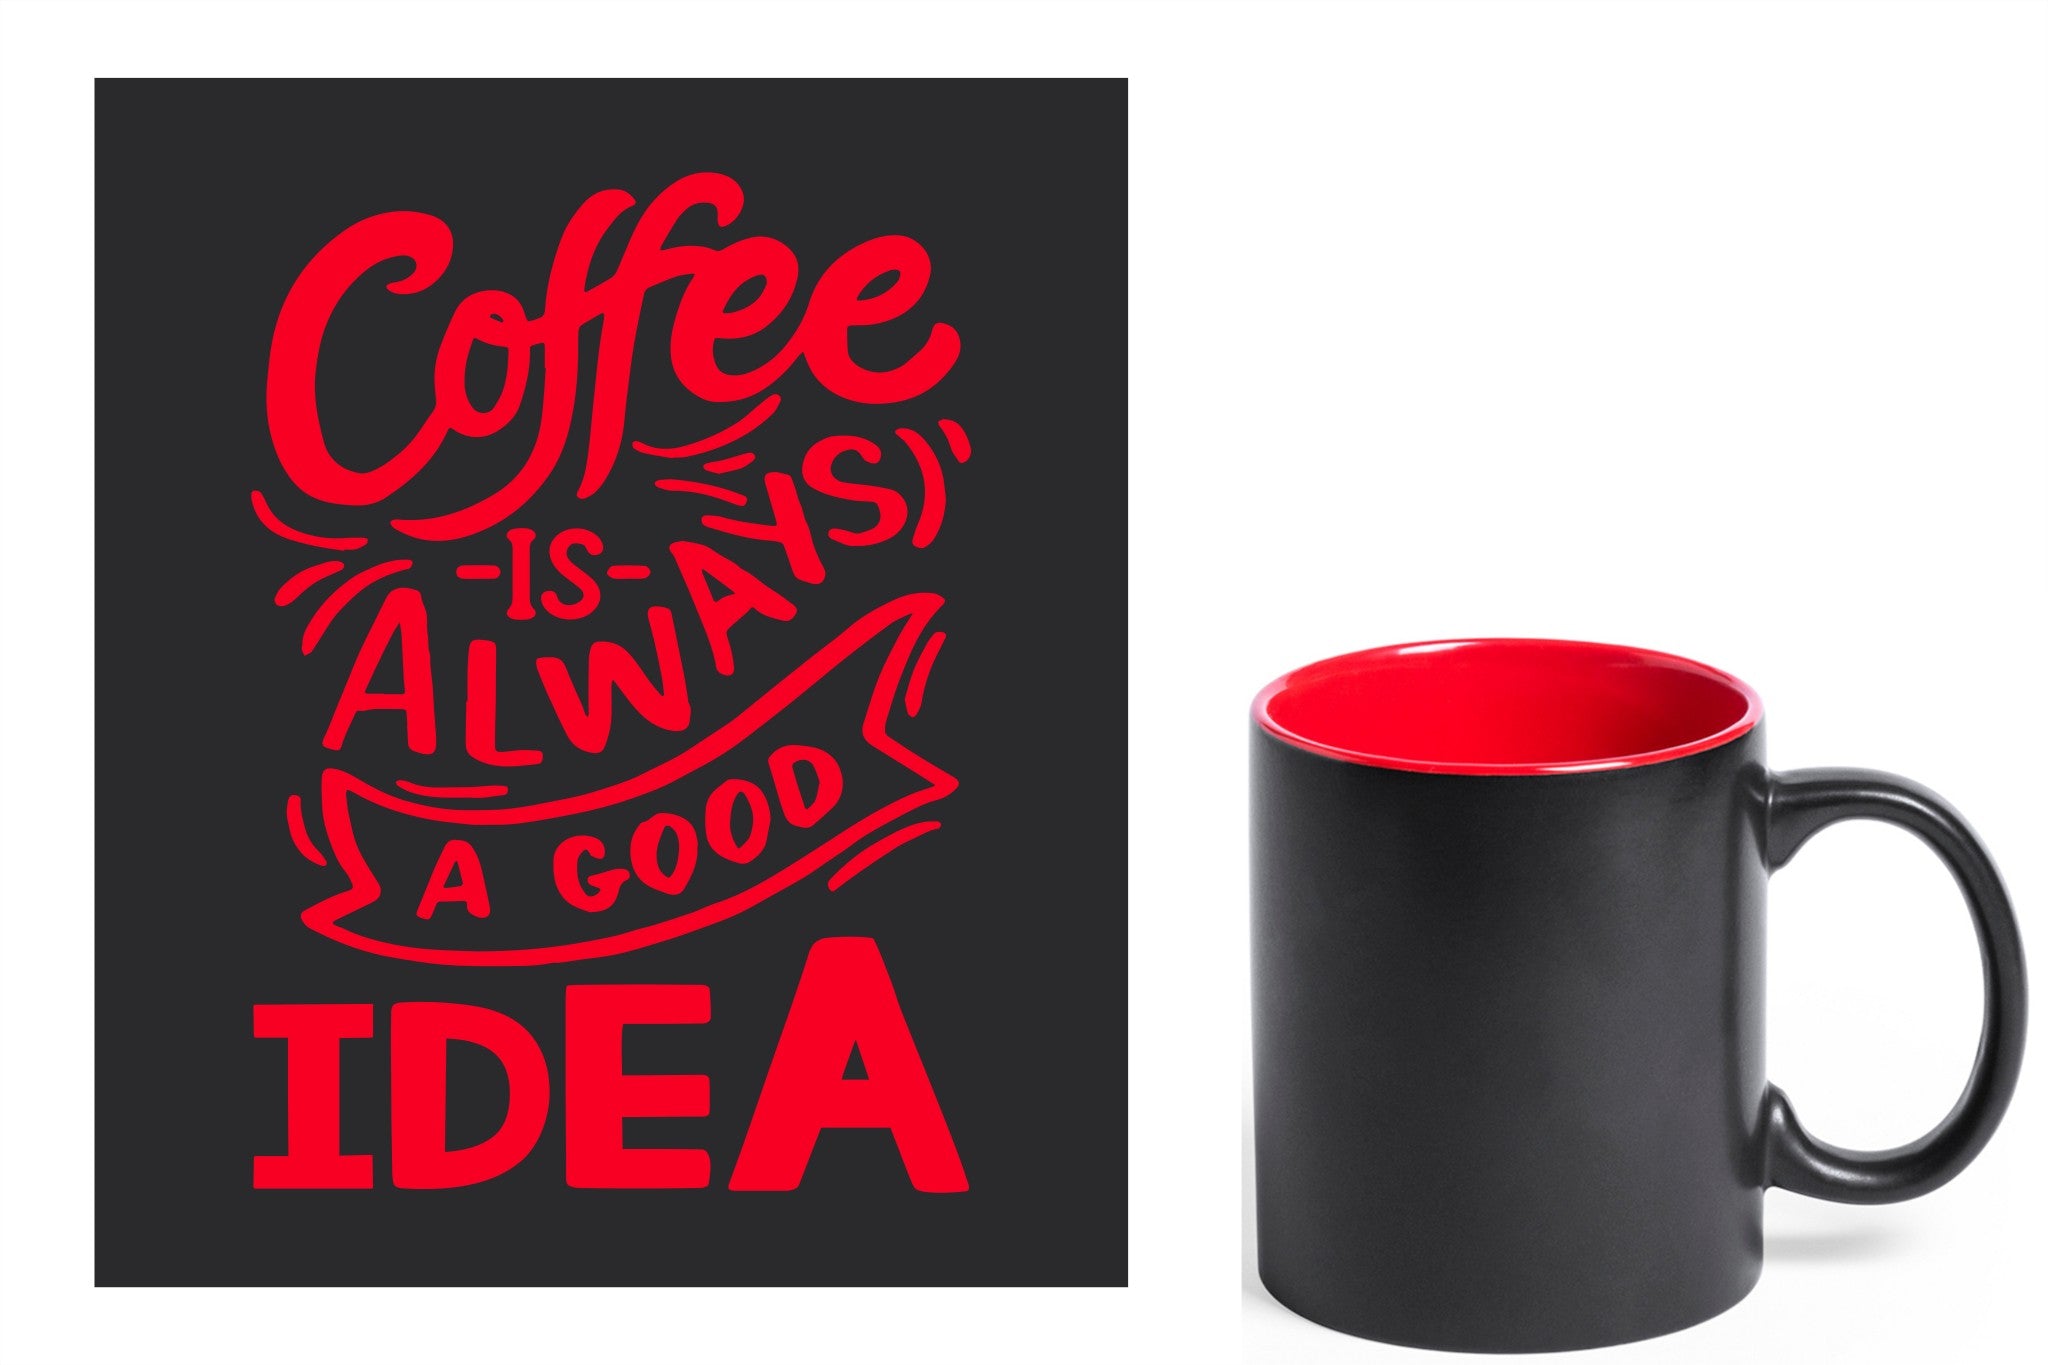 zwarte keramische mok met rode gravure  'Coffee is always a good idea'.